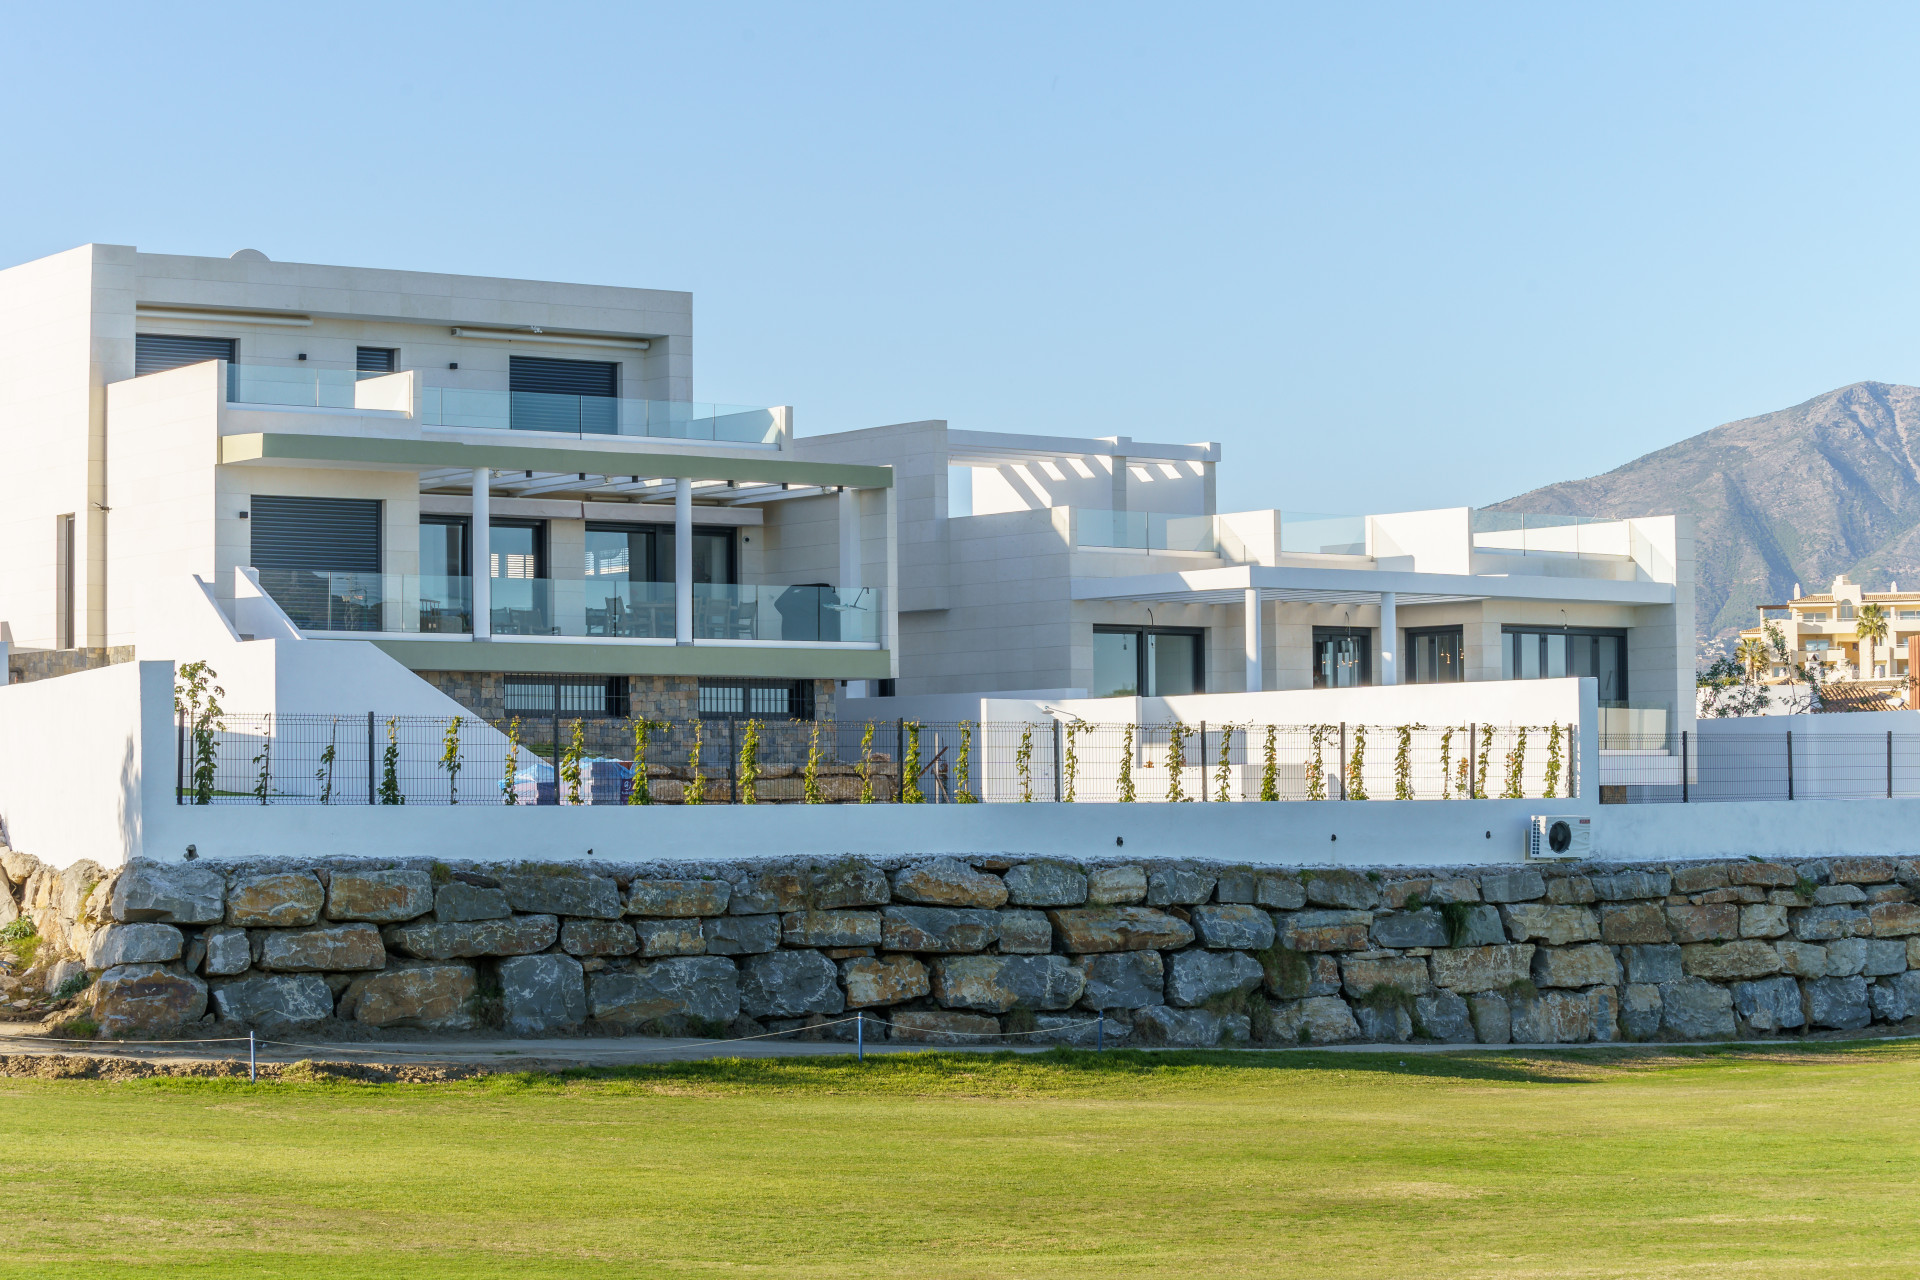 La Quinta de Cerrado: Exclusive frontline golf residential development in Mijas Costa.